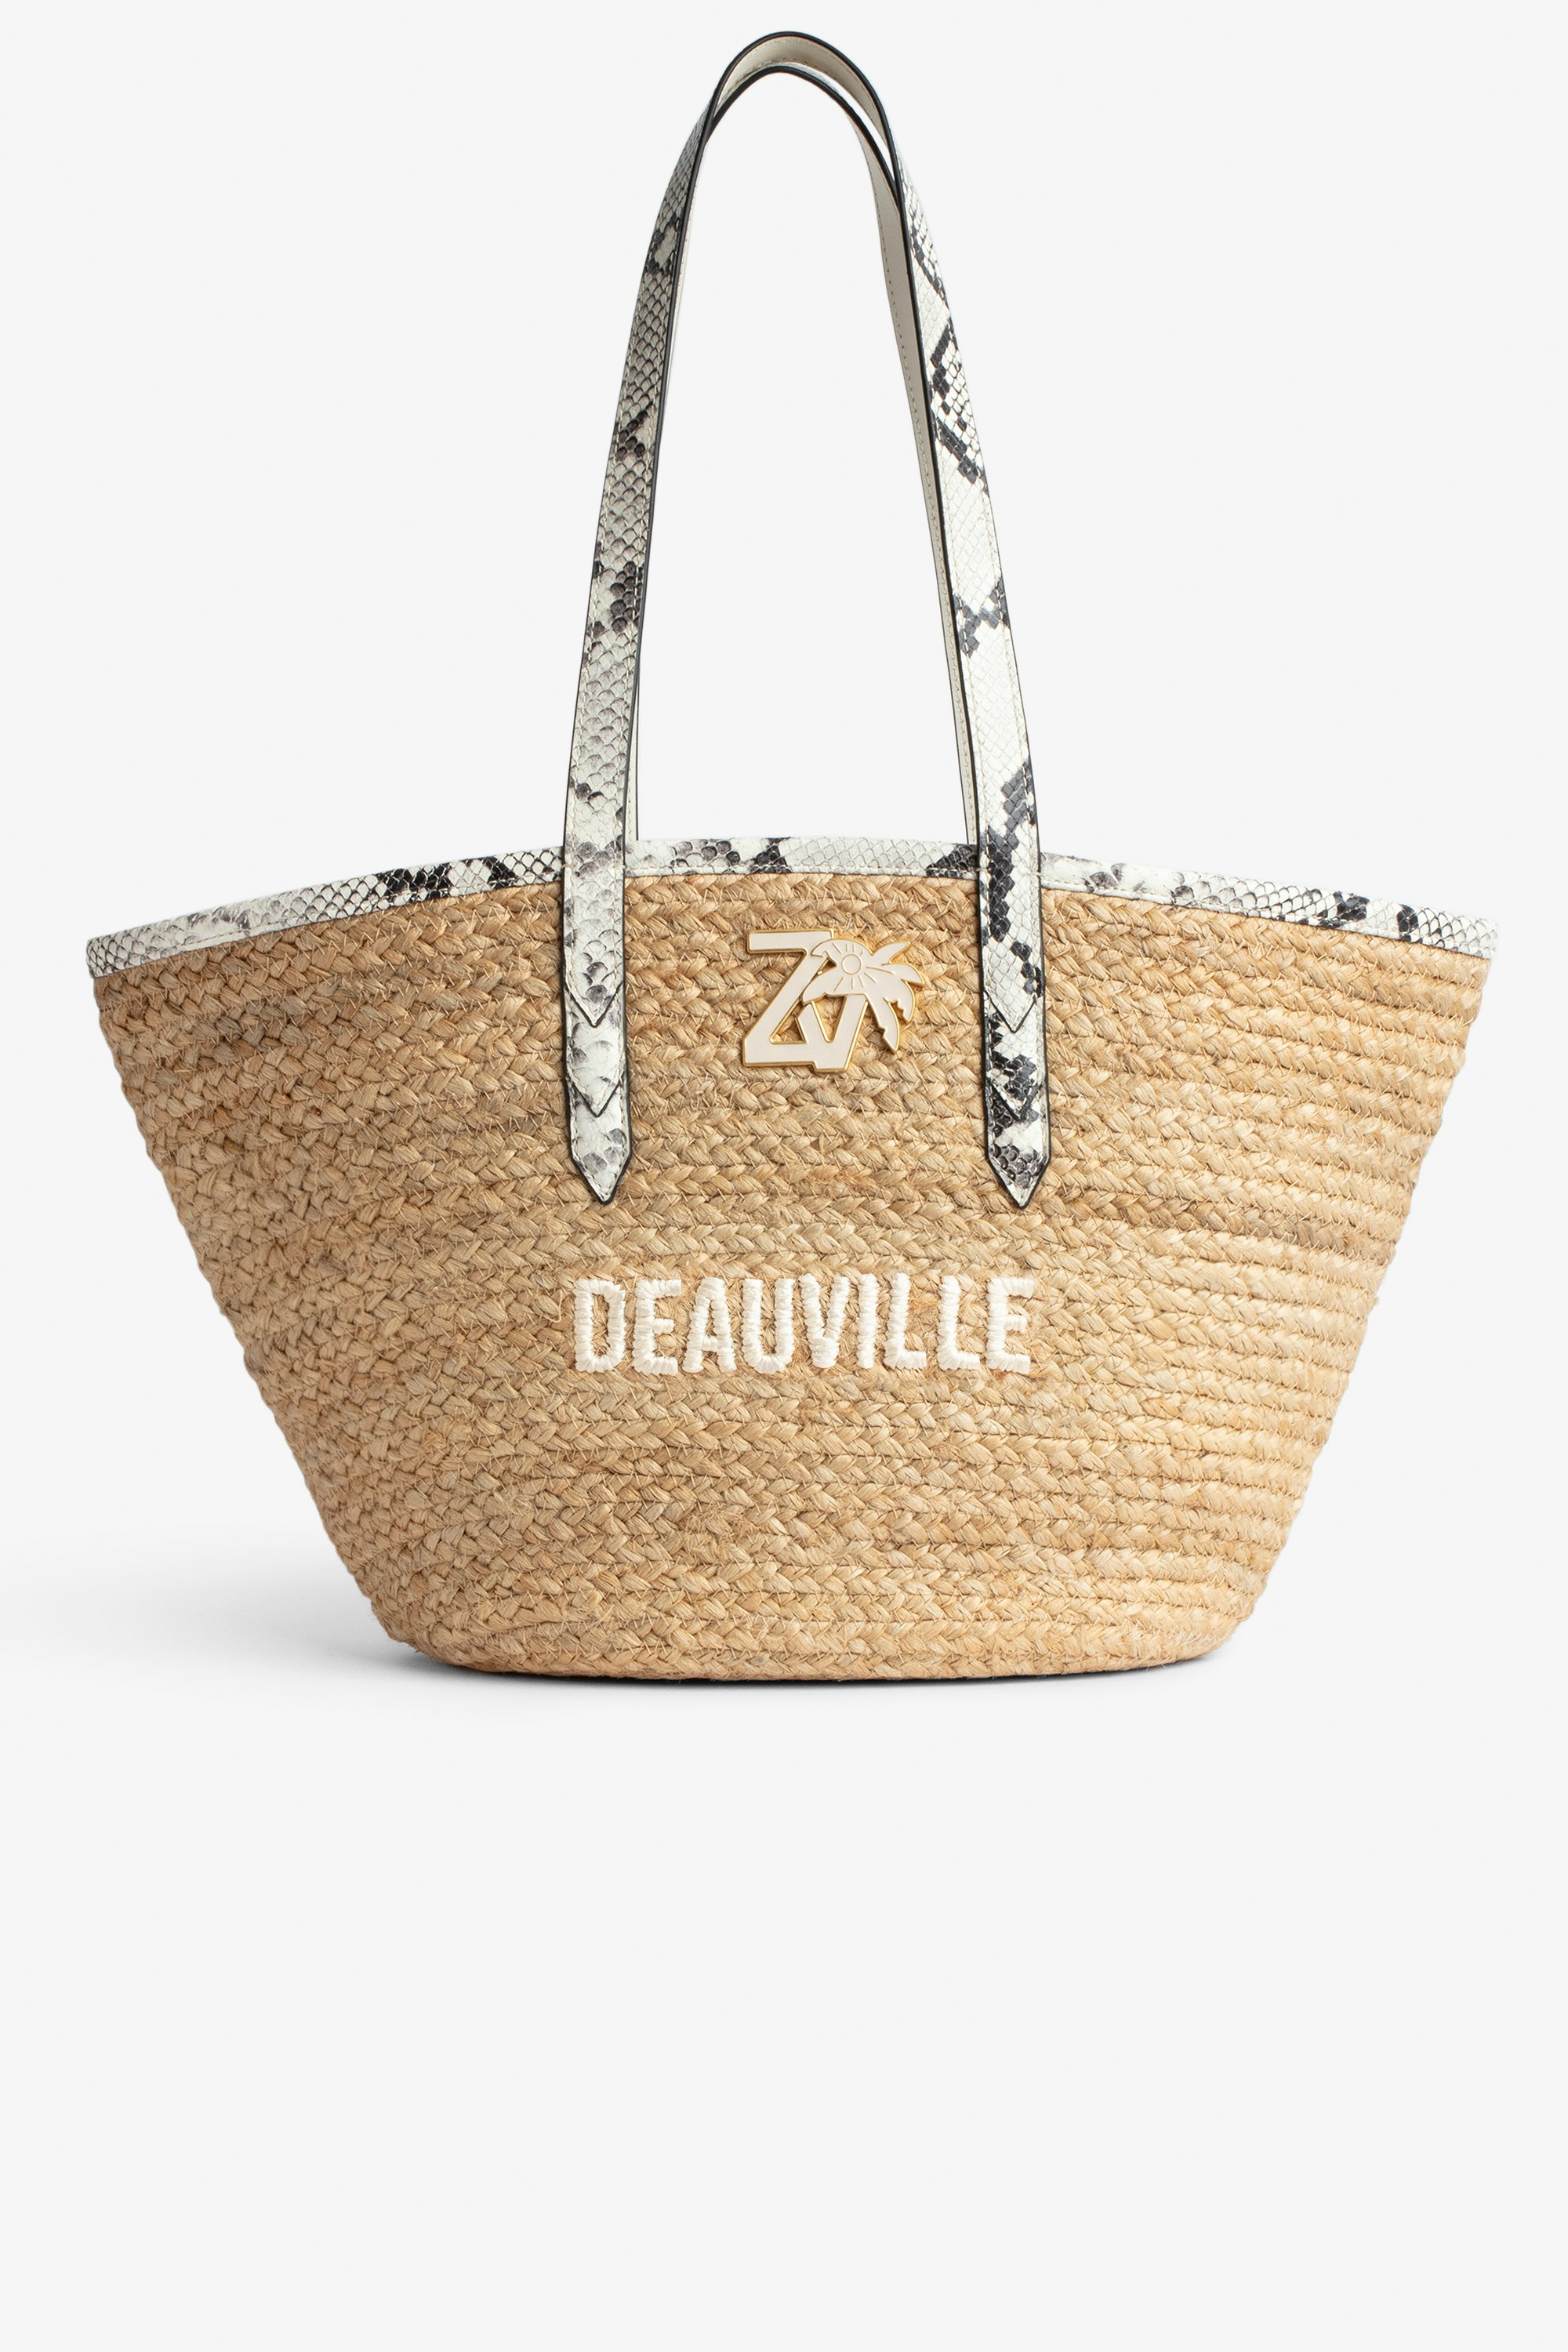 Sac Le Beach Bag - Sac en paille à anses en cuir écru effet python, brodé "Deauville" et orné d'un charm ZV.